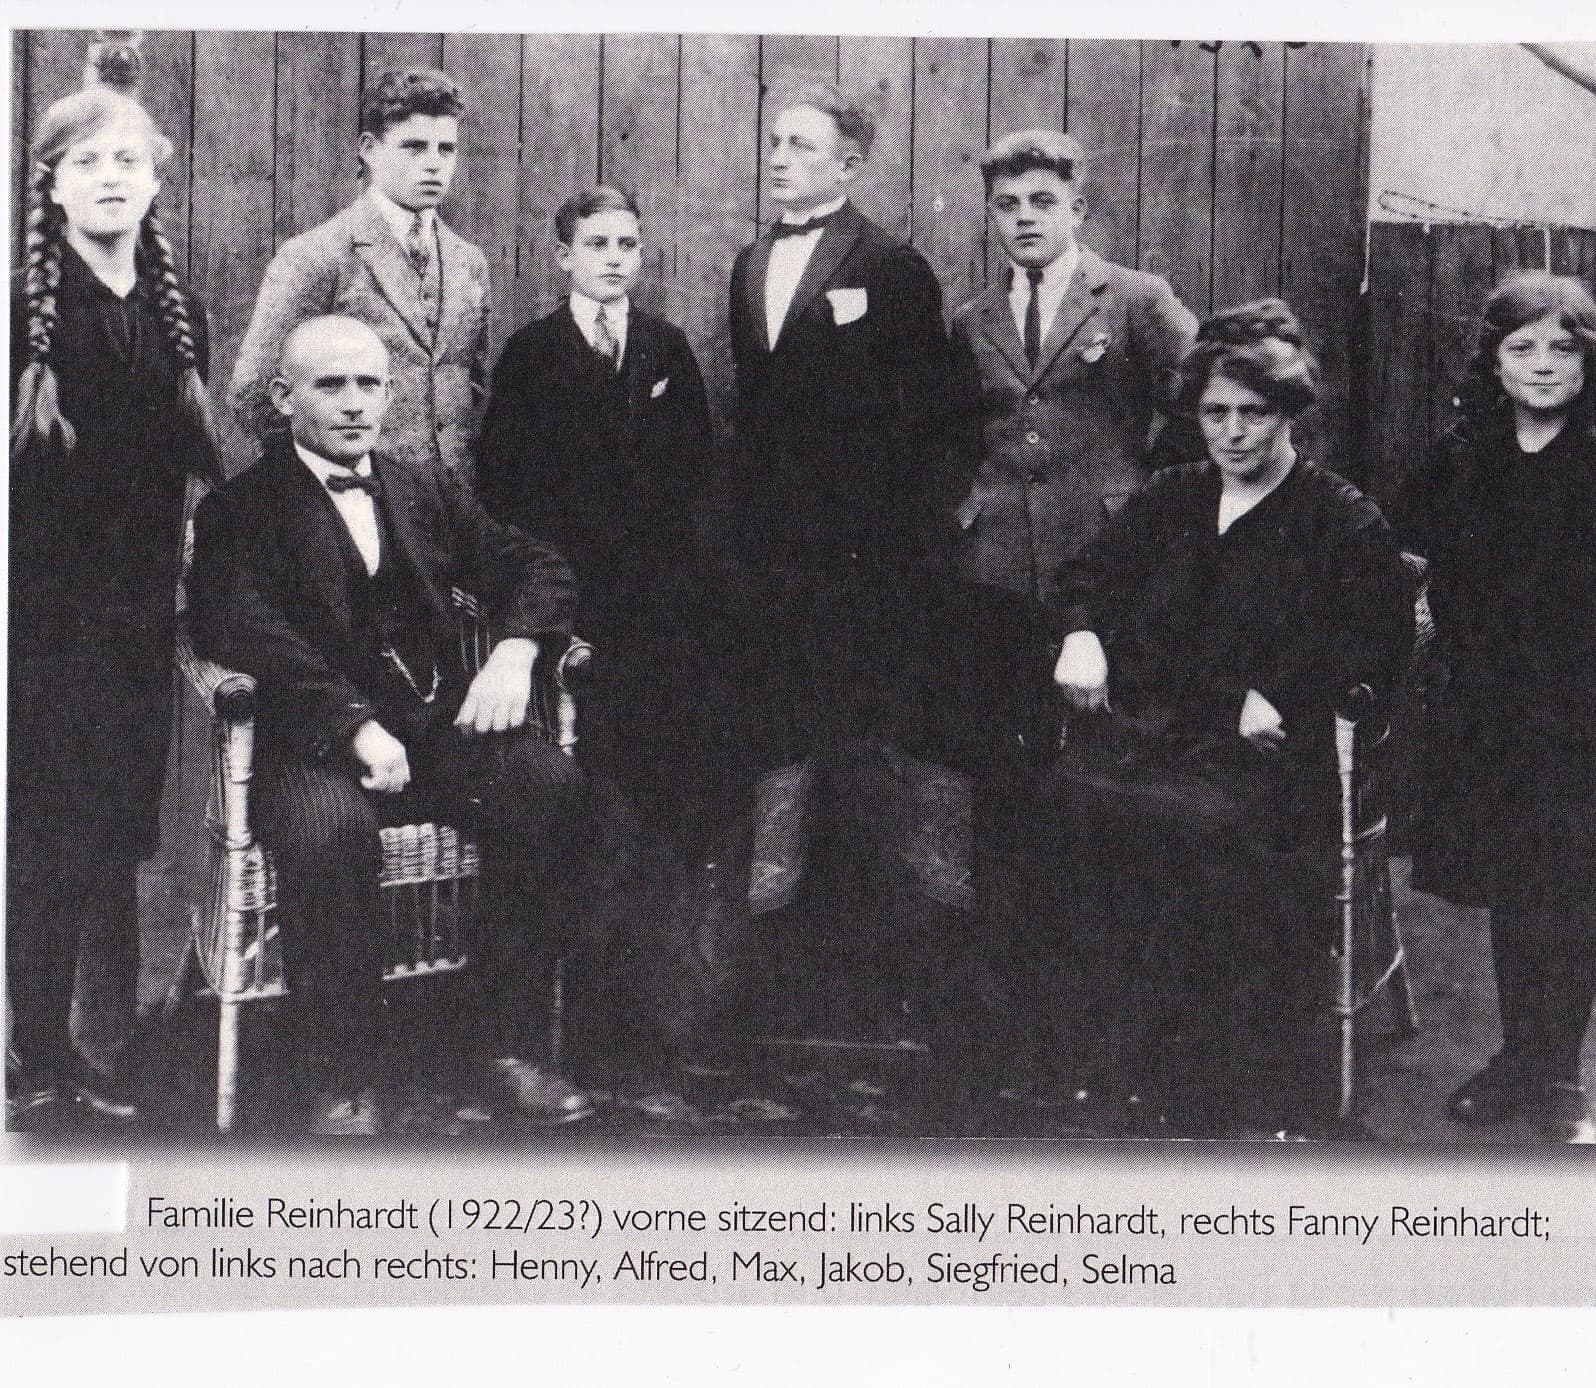 Familie Reinhard vorne sitzend links Sally und rechts Fanny, dahinter die Kinder (von links nach rechts): Henny, Alfred, Max, Jakob, Siegfried , Selma (1922/23)